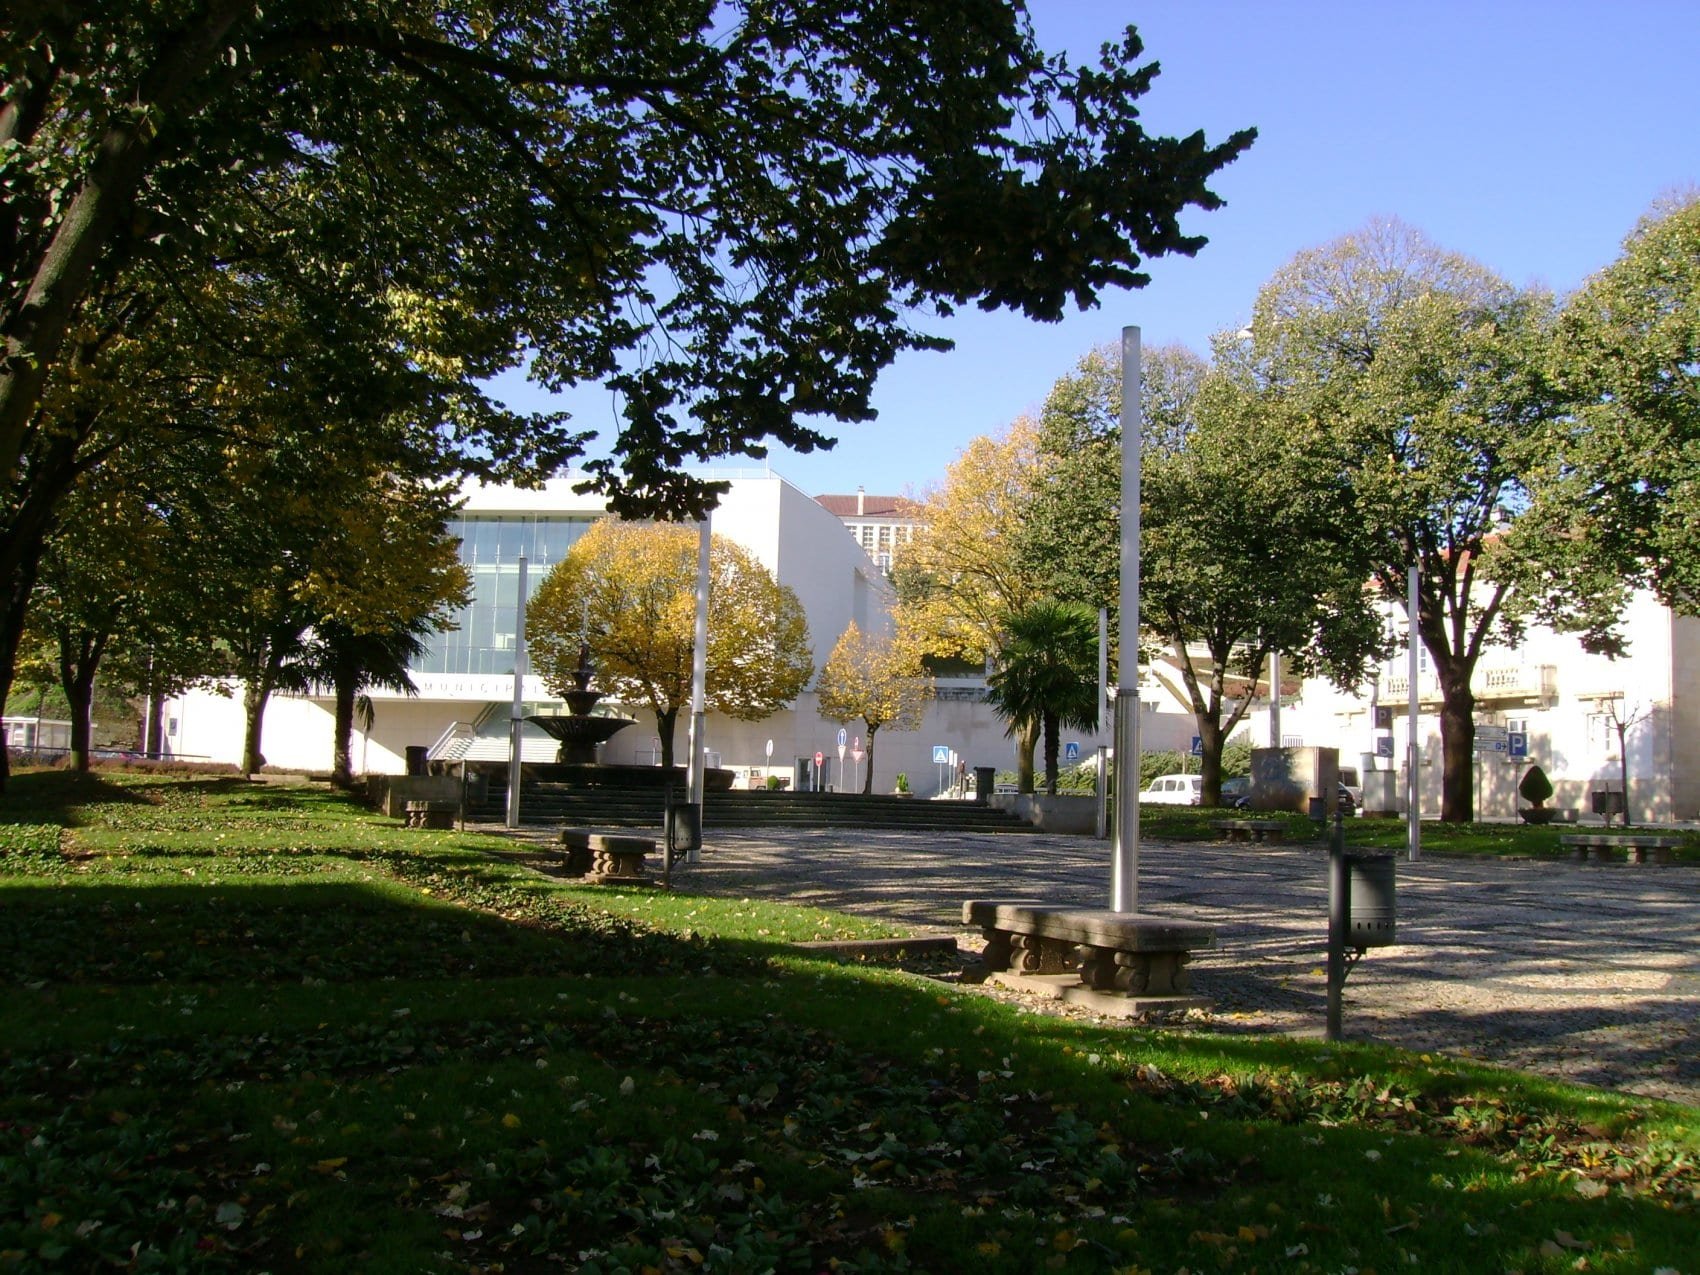 Jardim da Praça do Professor Cavaleiro de Ferreira